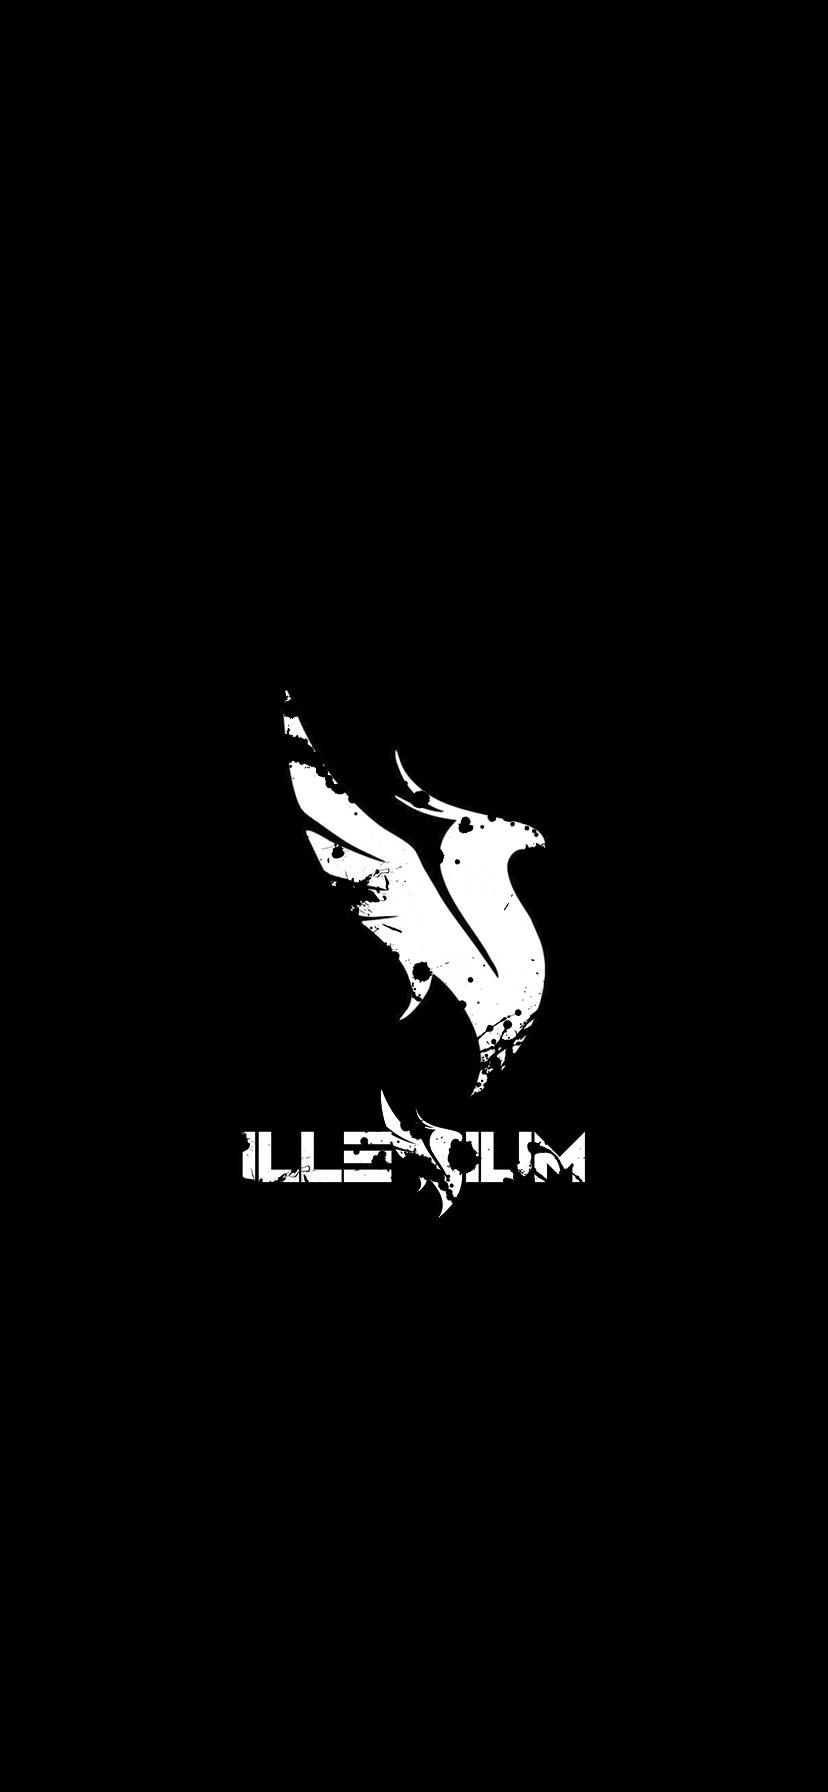 Illenium Logo Wallpapers